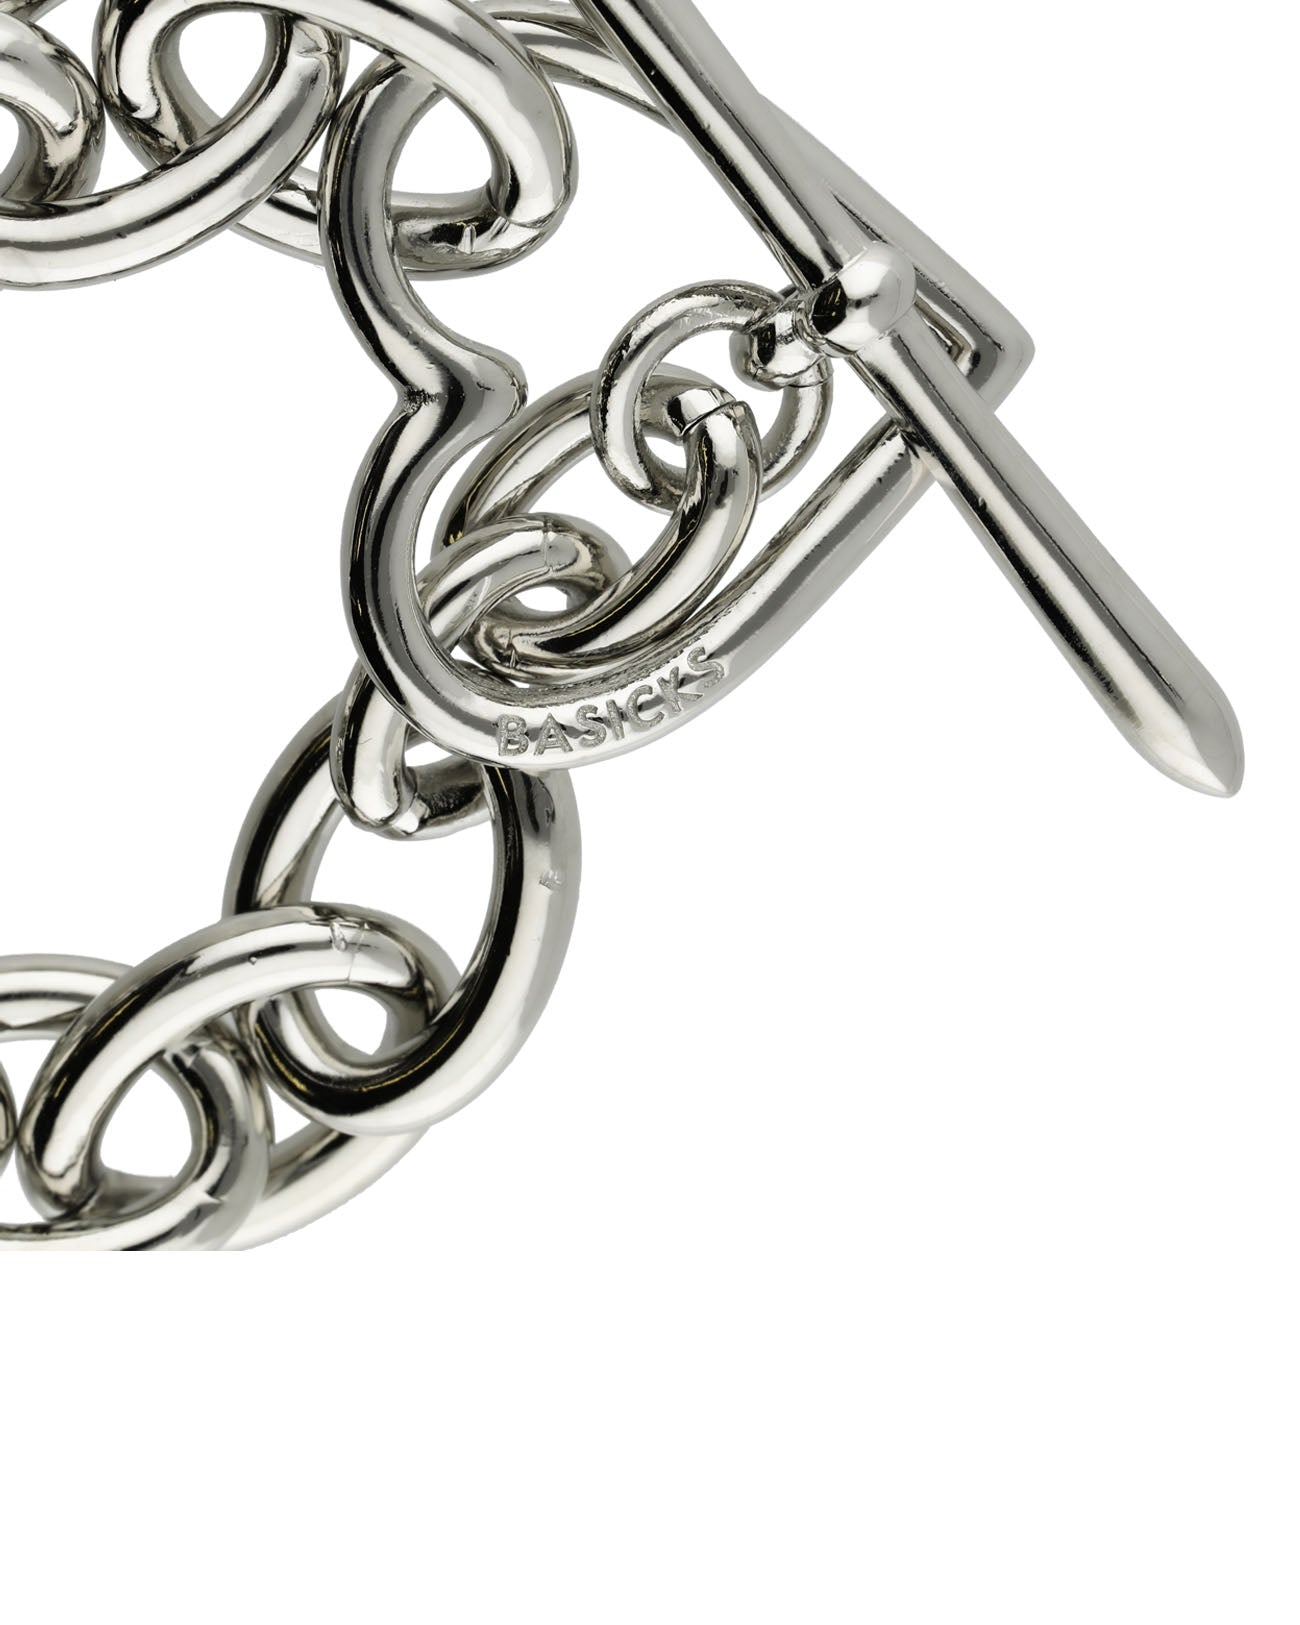 Heart Bracelet (Large Link) - silver